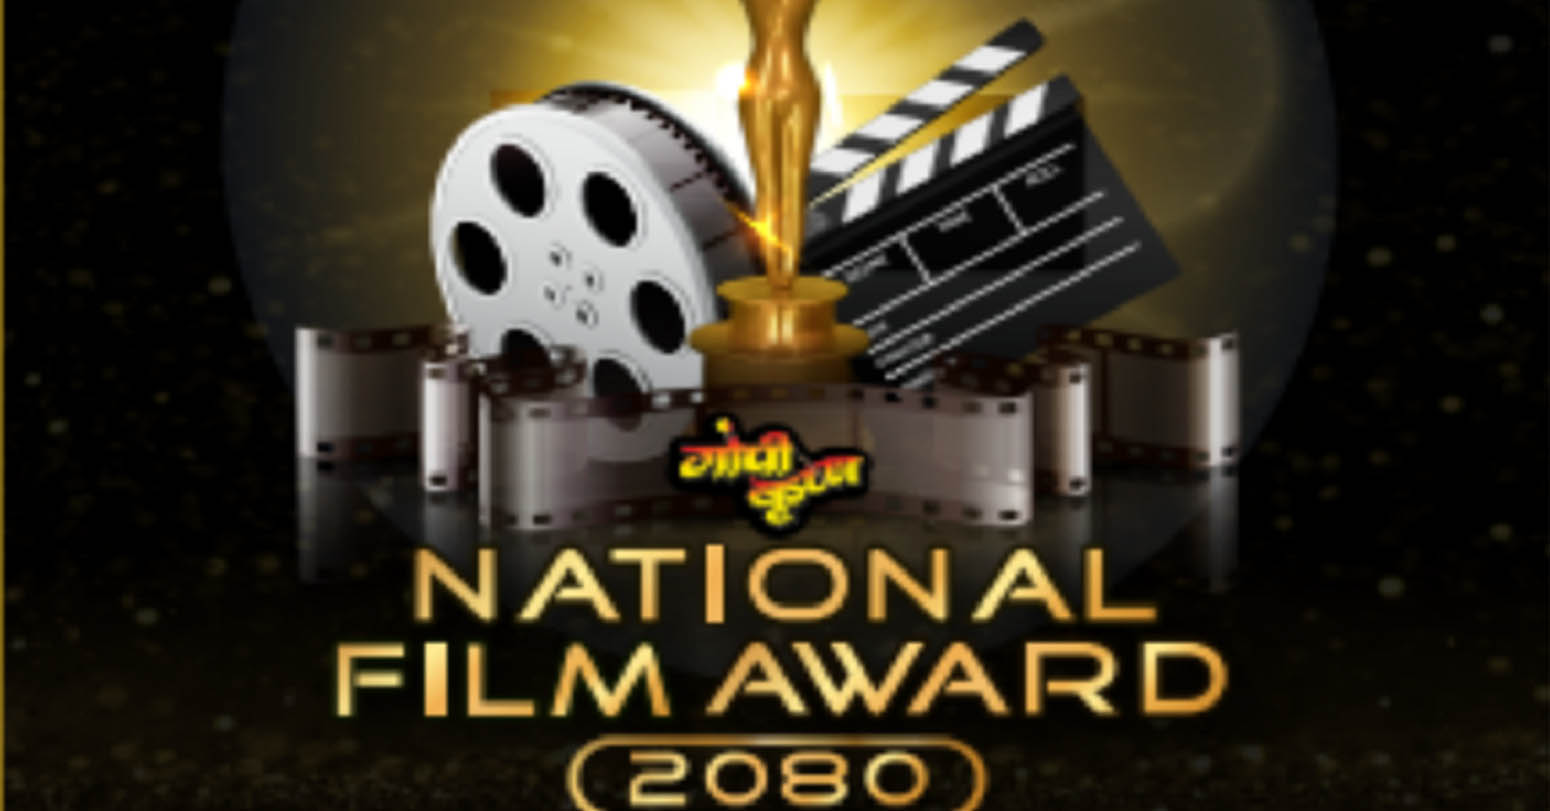 ‘गोपीकृष्ण राष्ट्रिय चलचित्र पुरस्कार’ को नयाँ संस्करण जेठमा